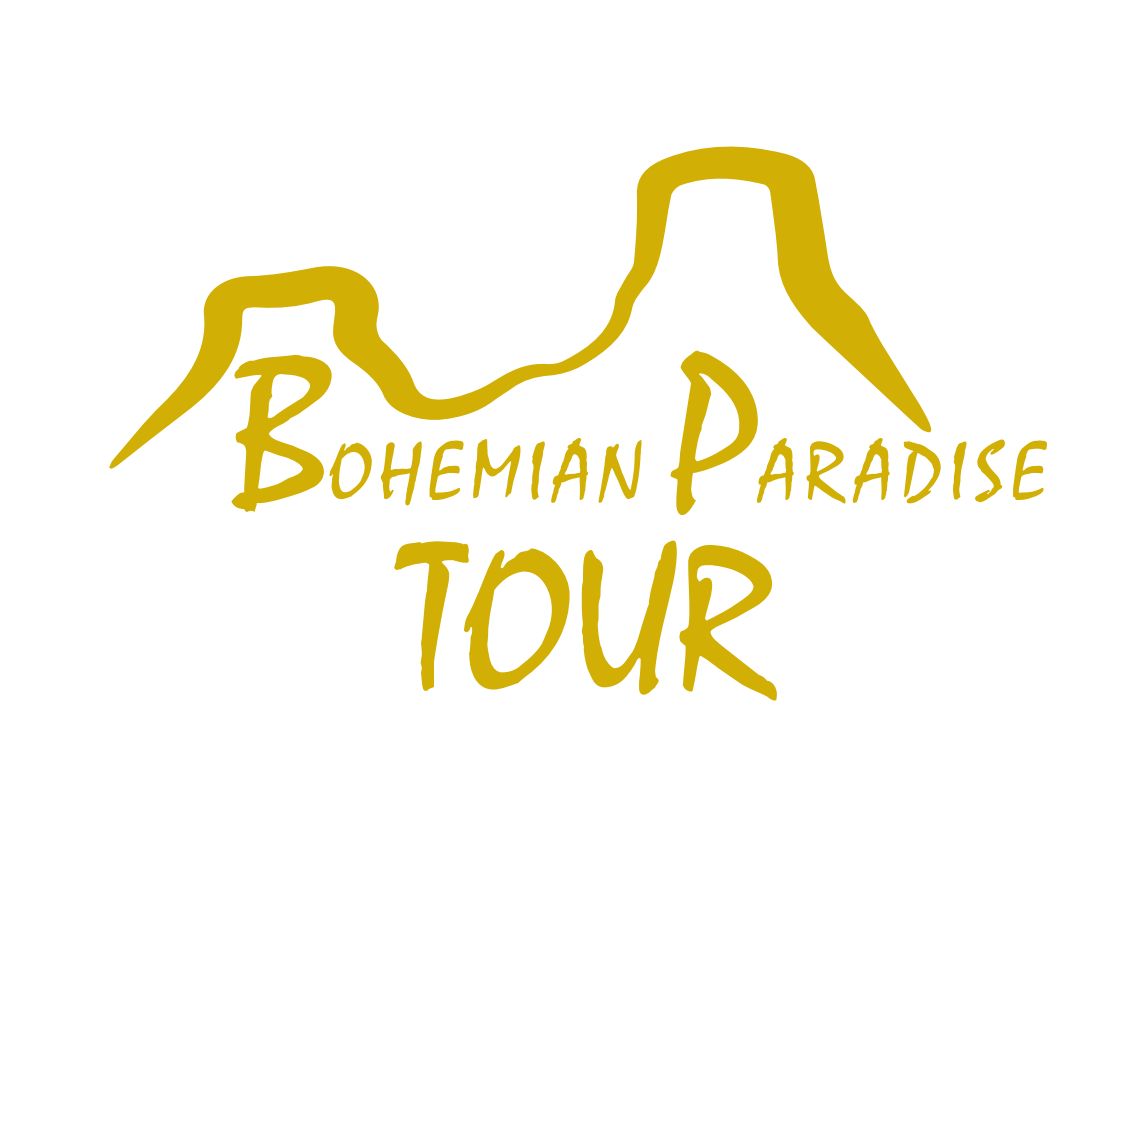 Bohemianparadisetour